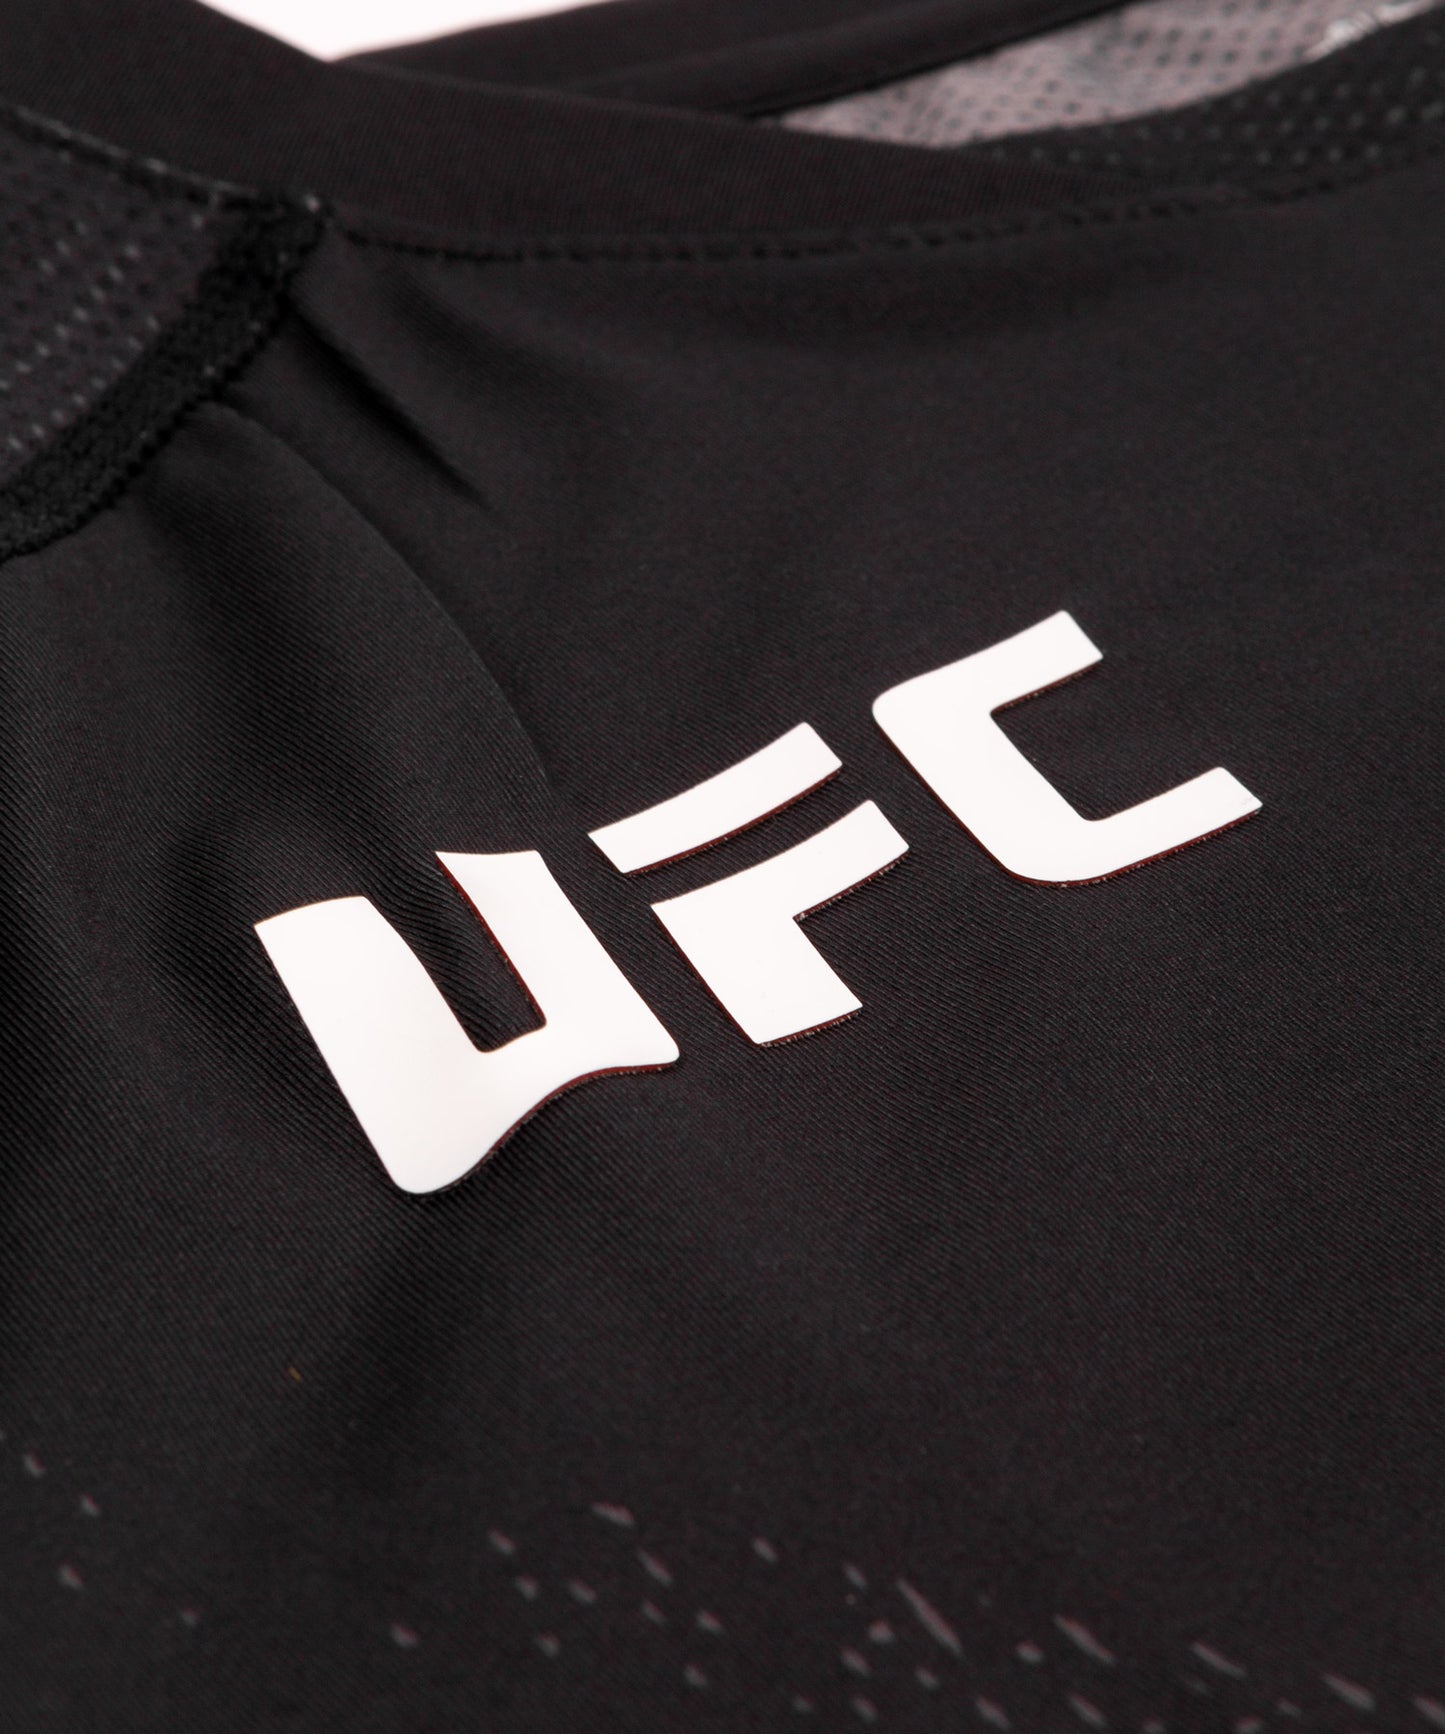 T-shirt Technique Homme UFC Venum Authentic Fight Night - Noir